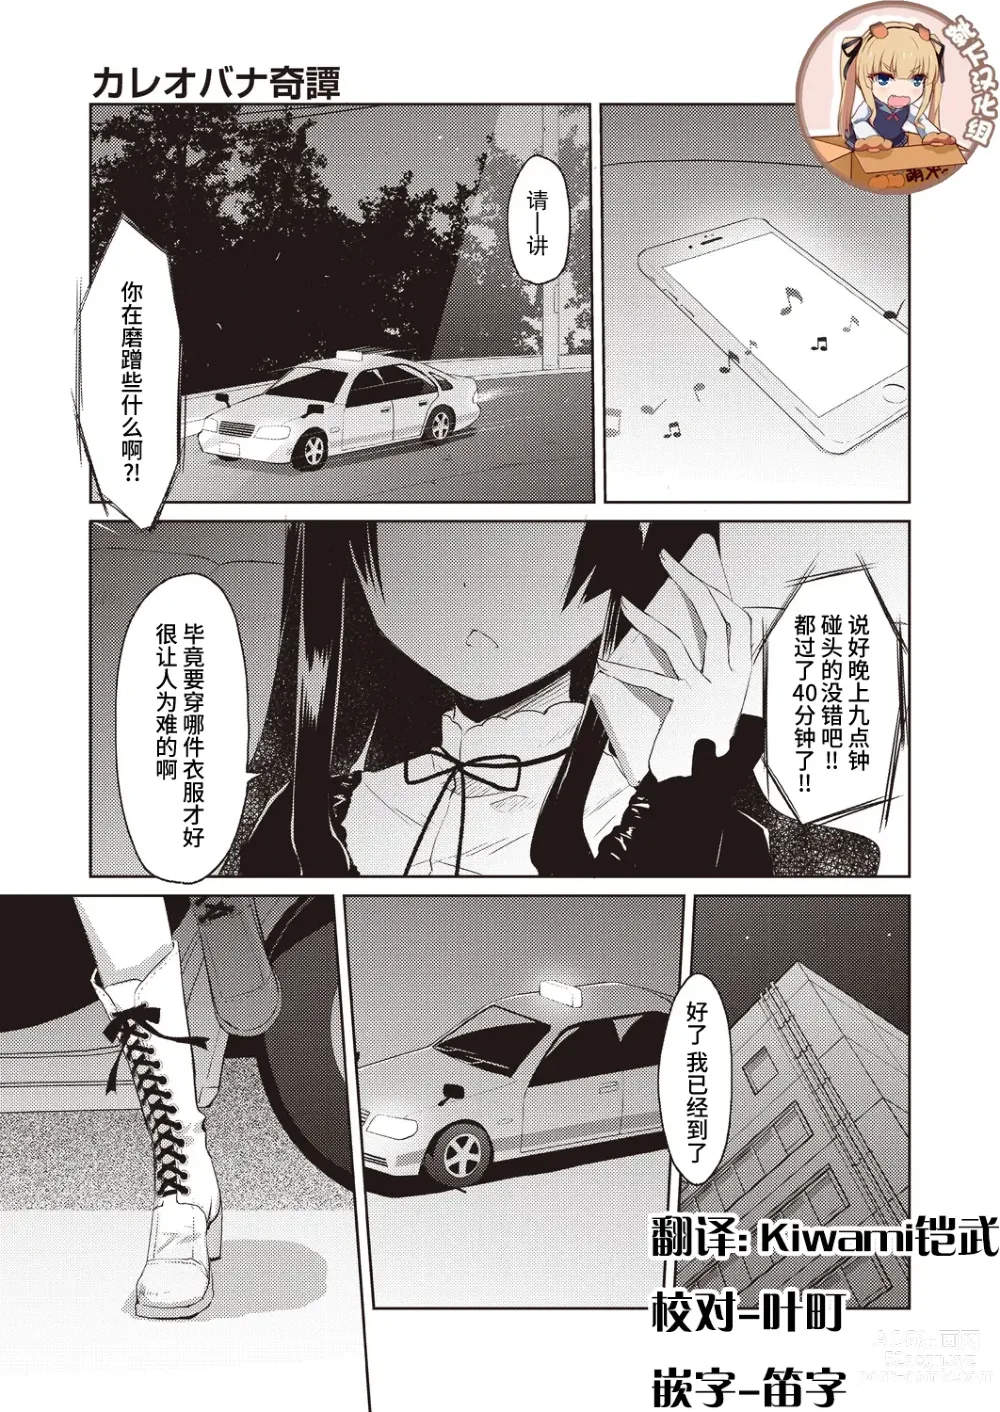 Page 1 of manga Kareobana Kitan Ch.1